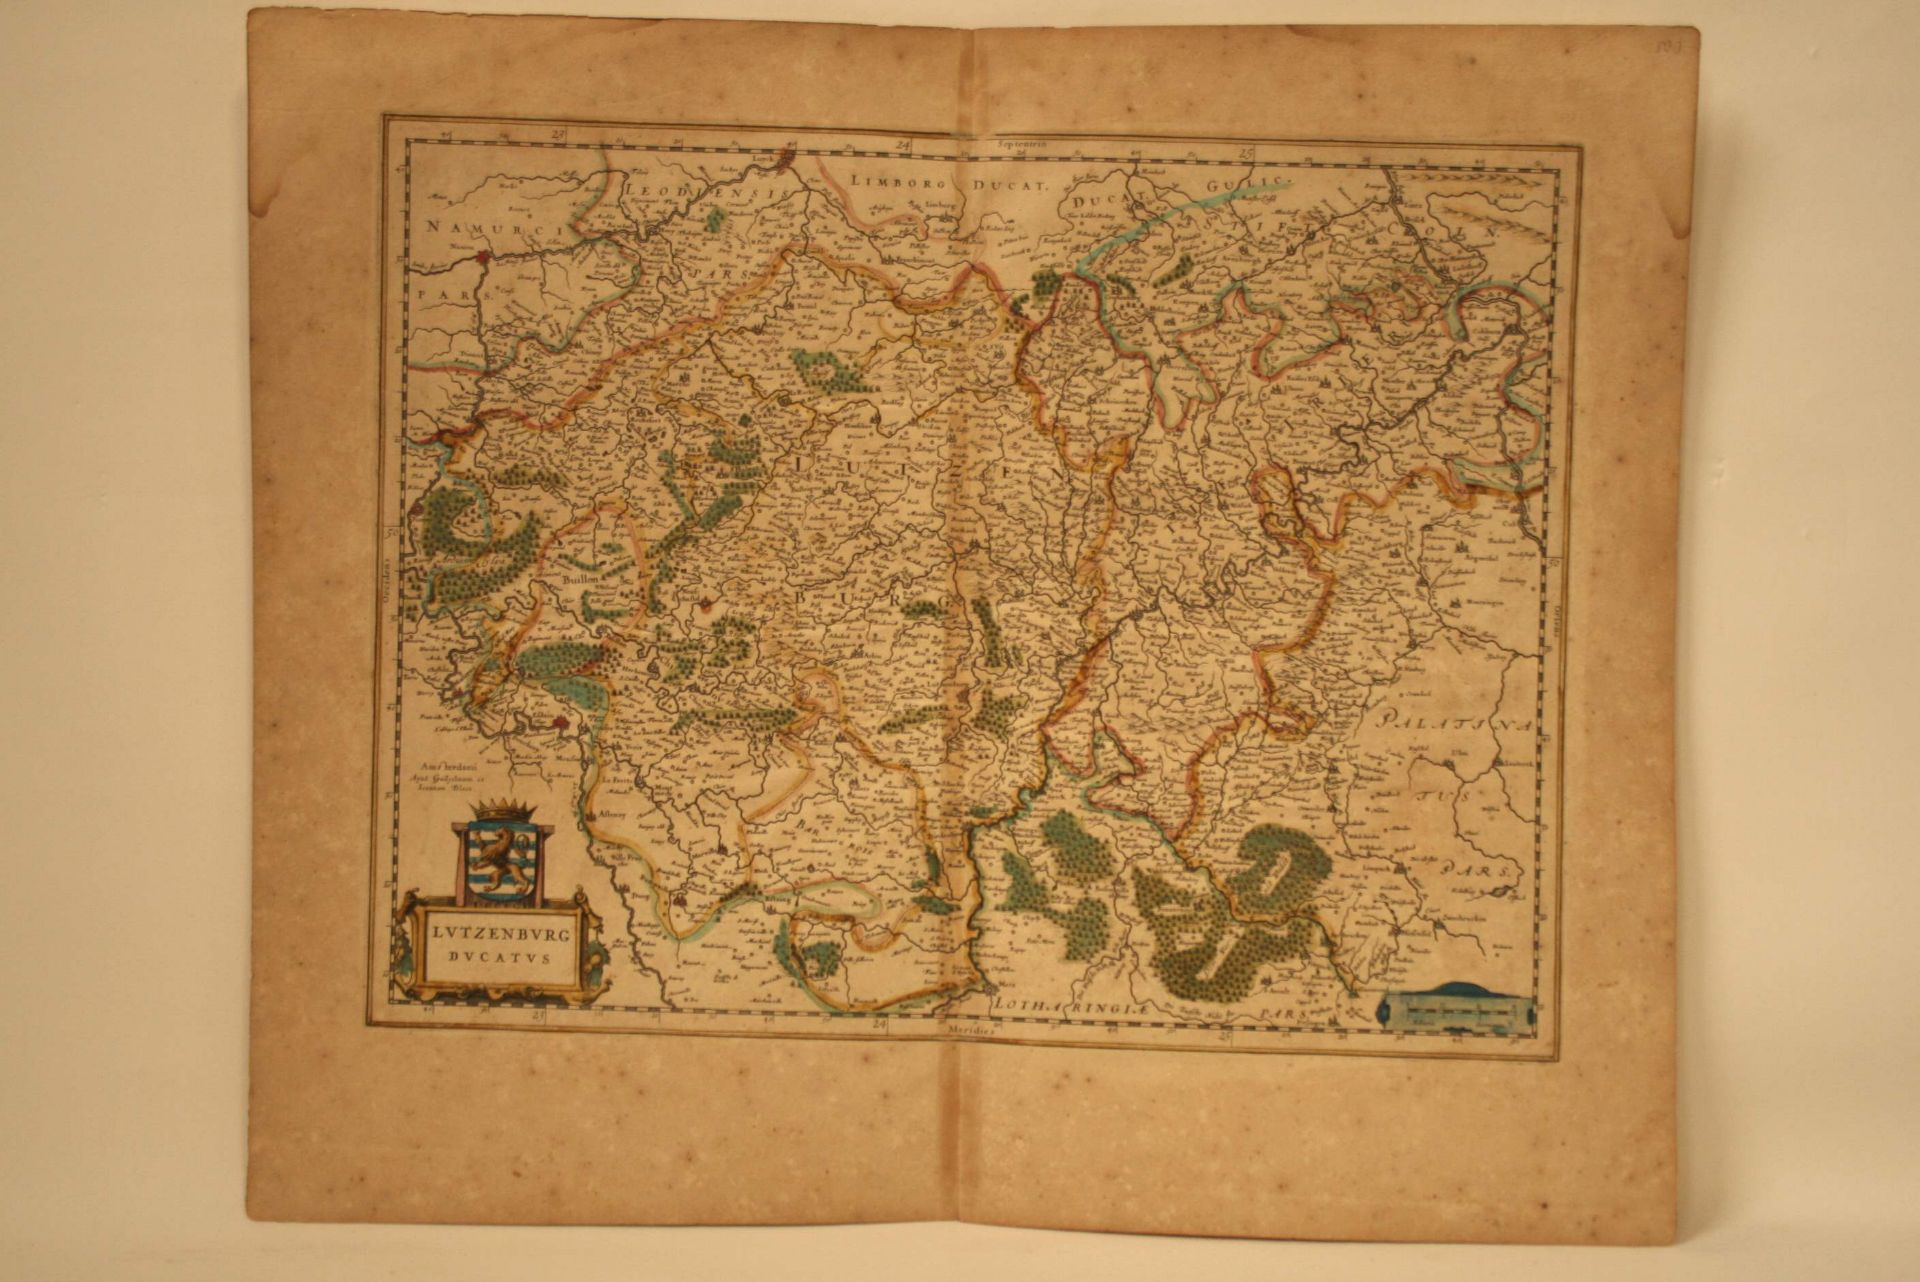 Carte de Luxembourg "Lutzenburg Ducatus" par Willem Janszoon BLAEU, 1642 - Dimensions [...]